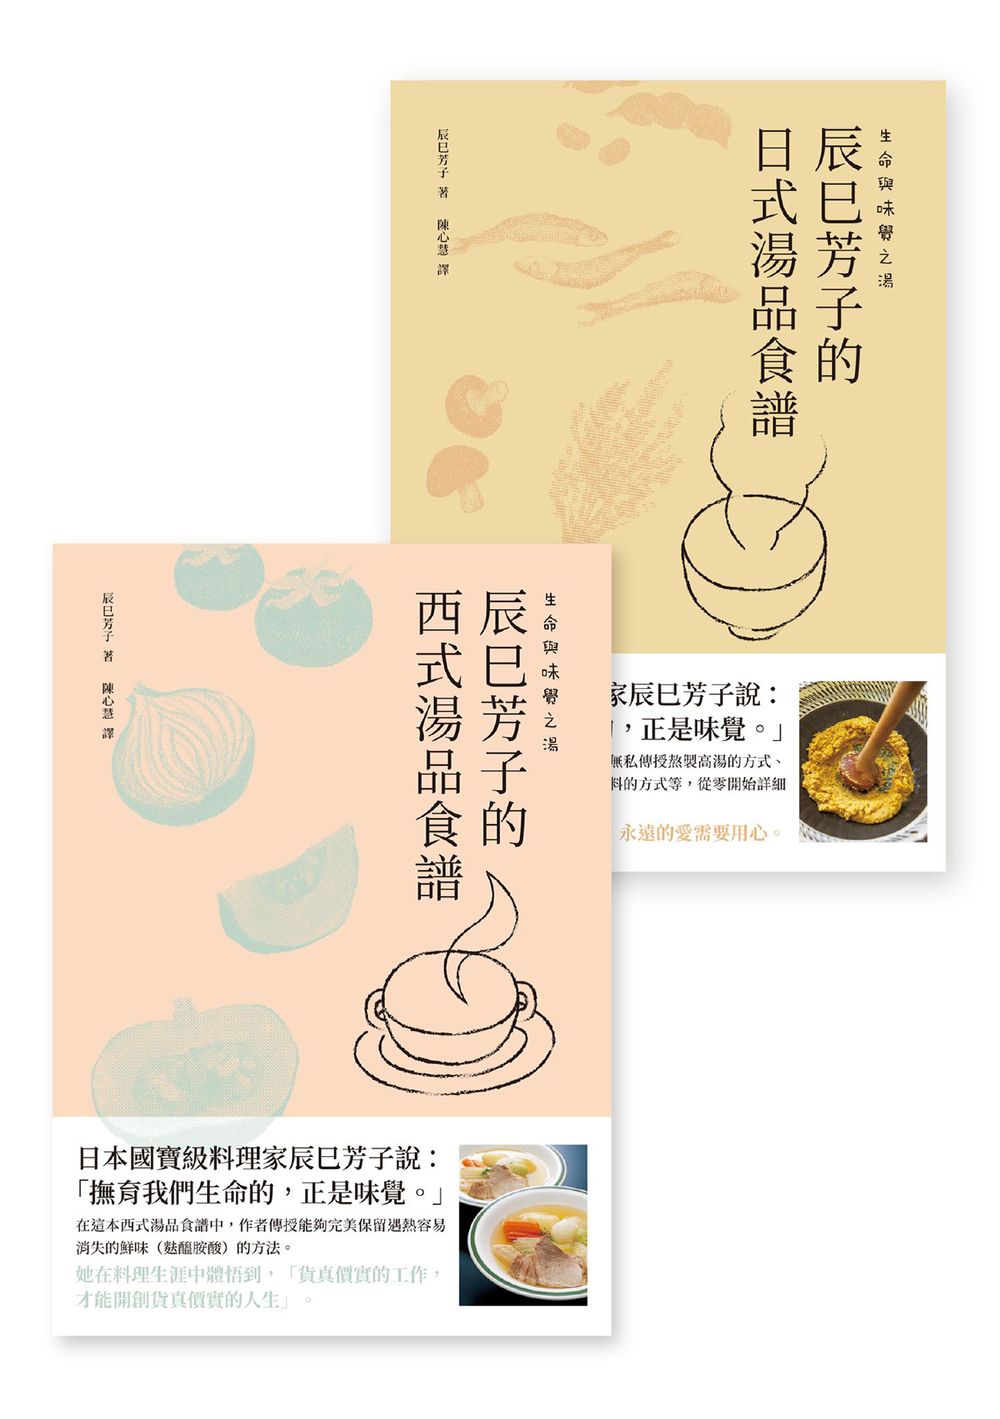 生命與味覺之湯-辰巳芳子的日式與西式湯品食譜(乙套二冊) (電子書)